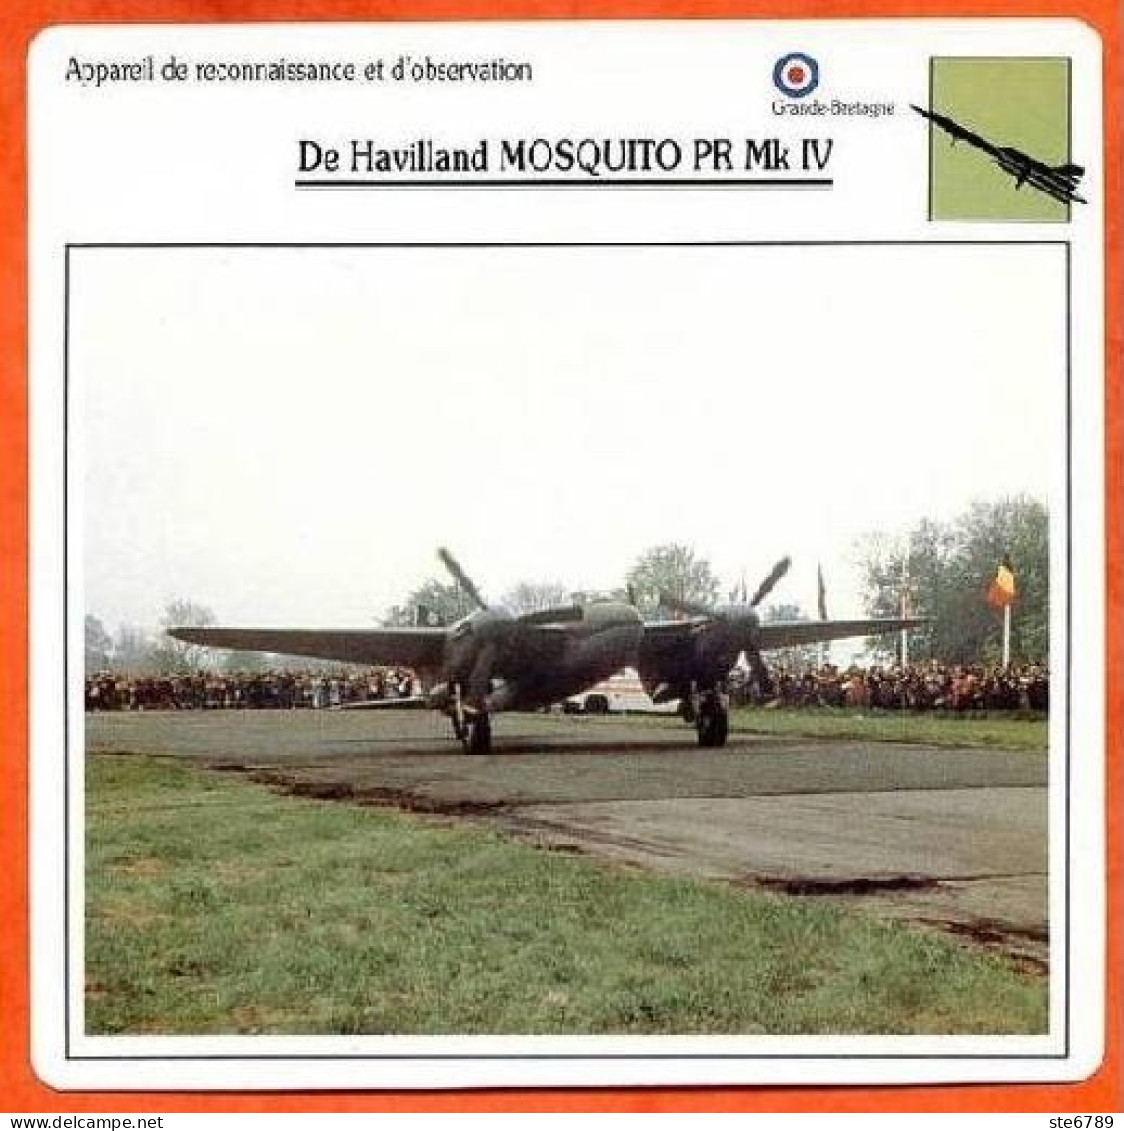 Fiche Aviation DE HAVILLAND MOSQUITO PR MK IV / Avion Reconnaissance Et Observation UK Avions - Aerei